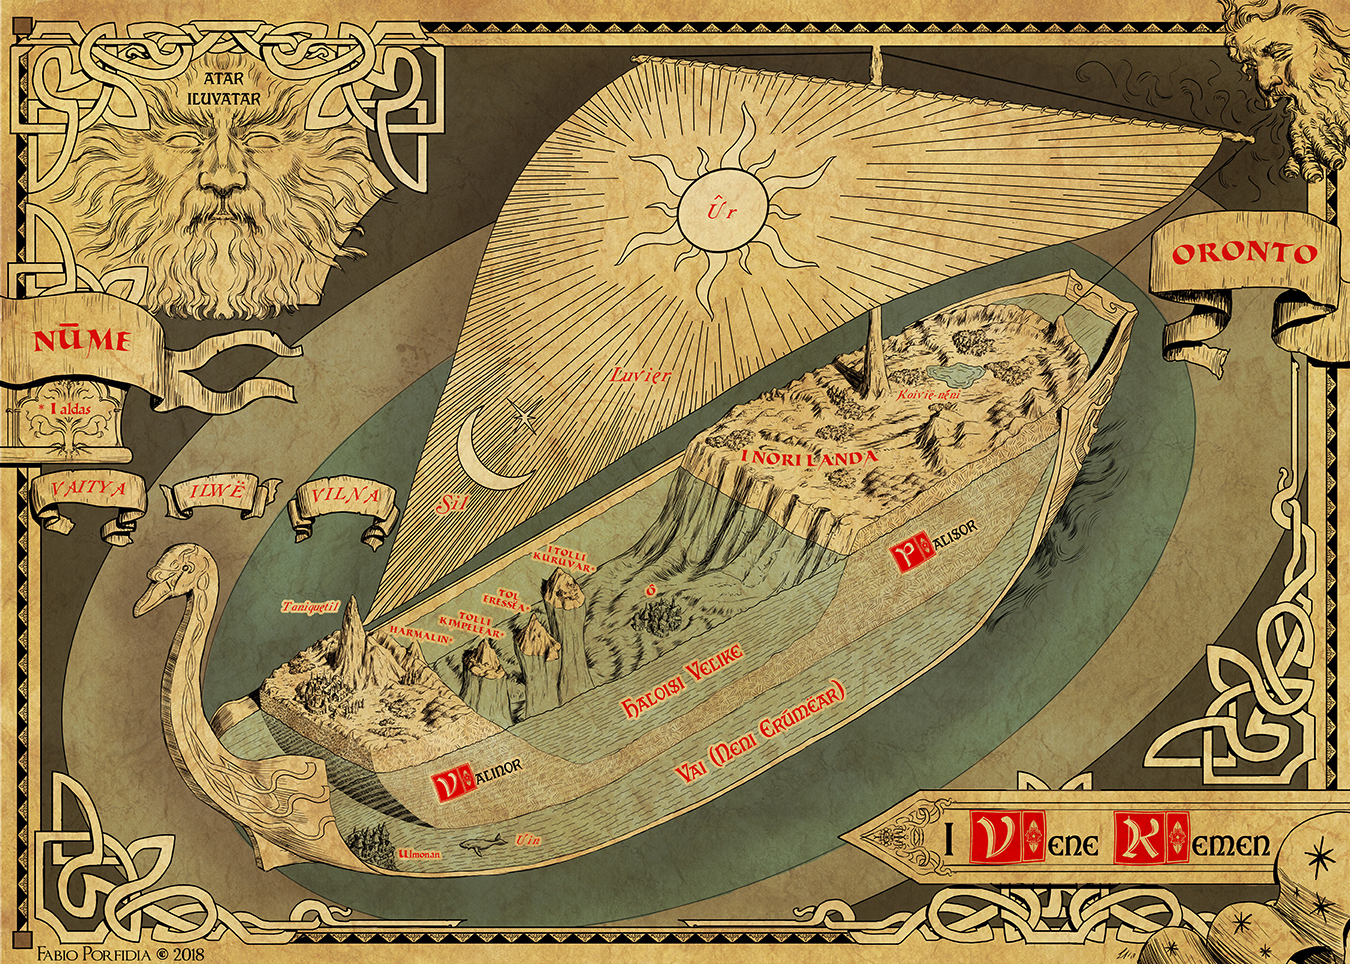 La Nave del Mondo (The Ship of the World) by Fabio Porfidia